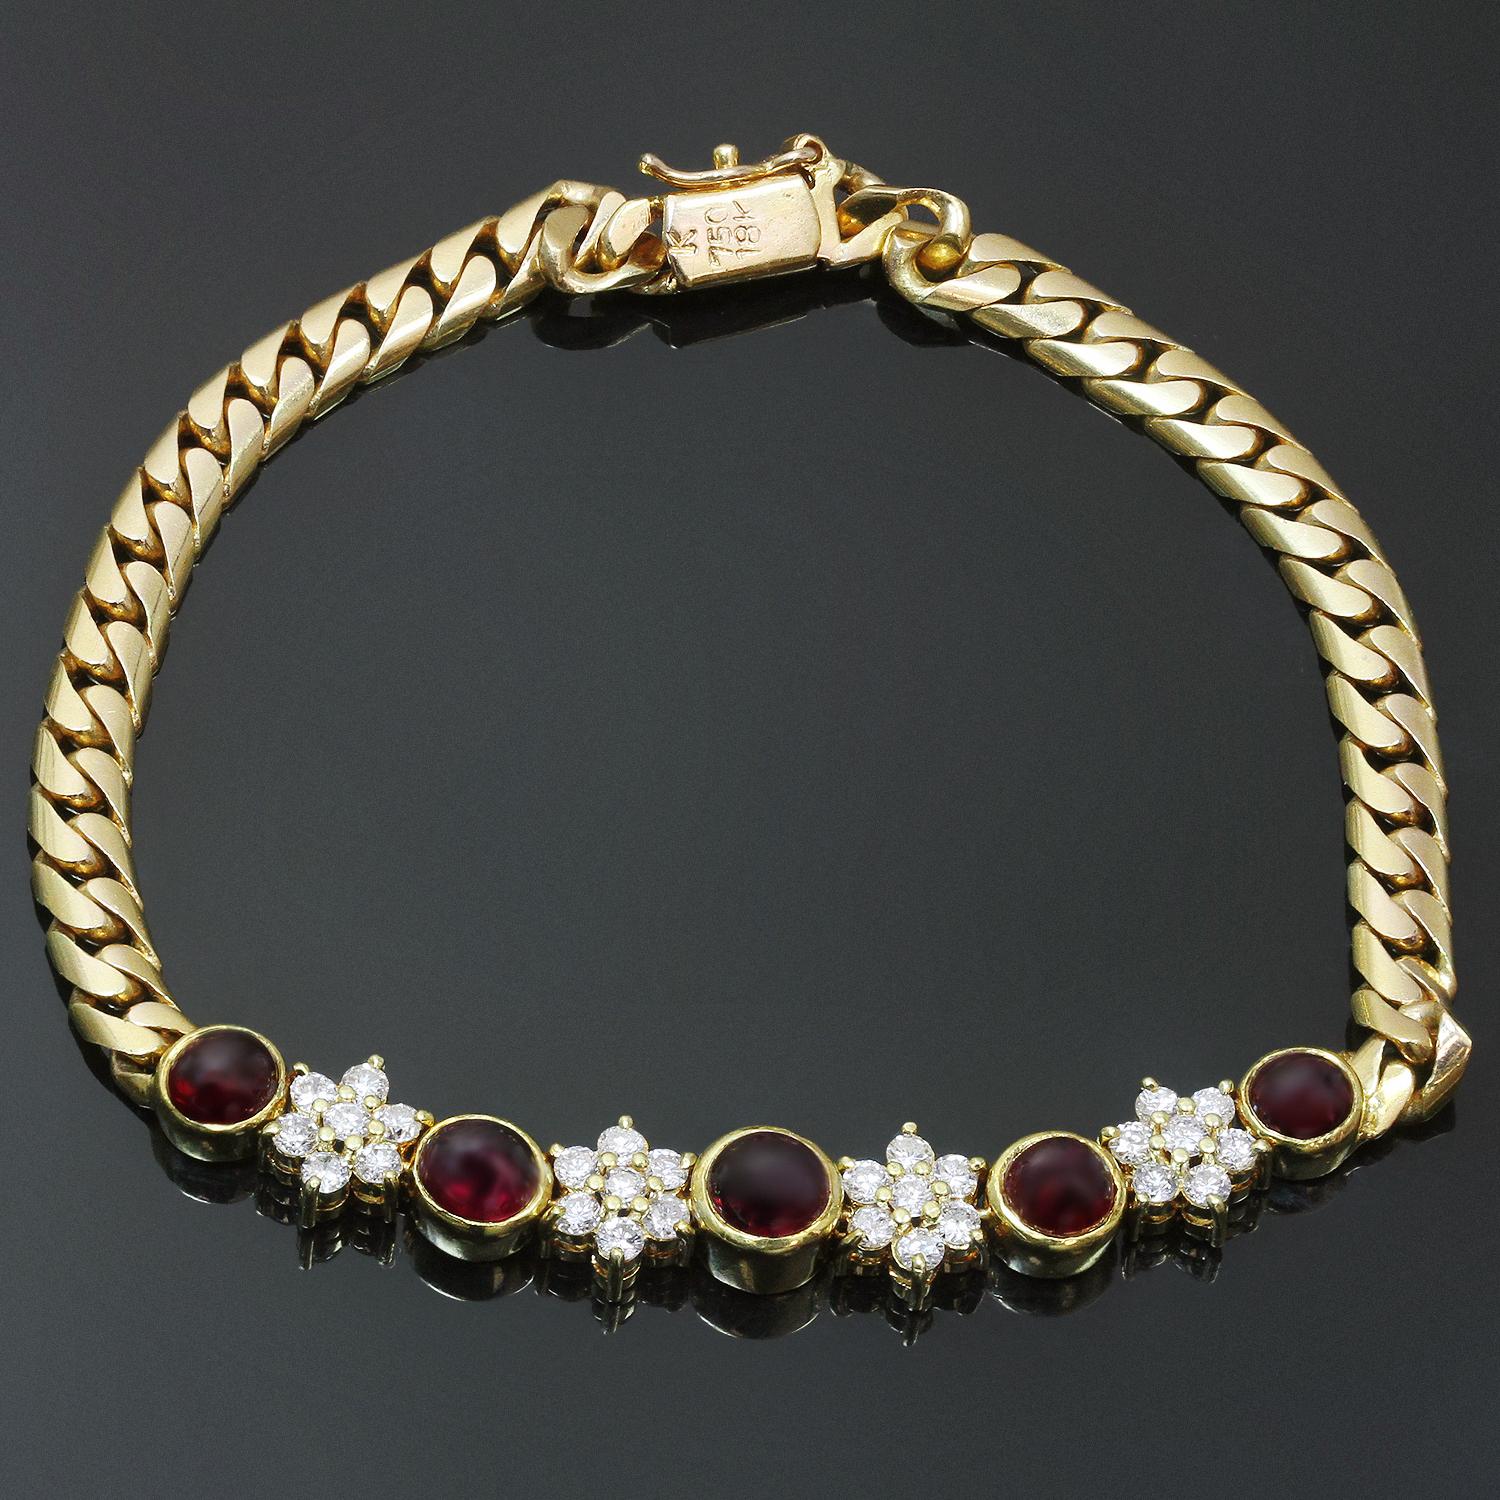 Ce bracelet vintage classique est réalisé en or jaune 18 carats et serti de diamants ronds G-H VS1-VS2 taille brillant d'un poids estimé à 1,0 carat et de rubis ronds cabochon d'un poids estimé à 1,80 carat. Fabriqué aux États-Unis vers les années